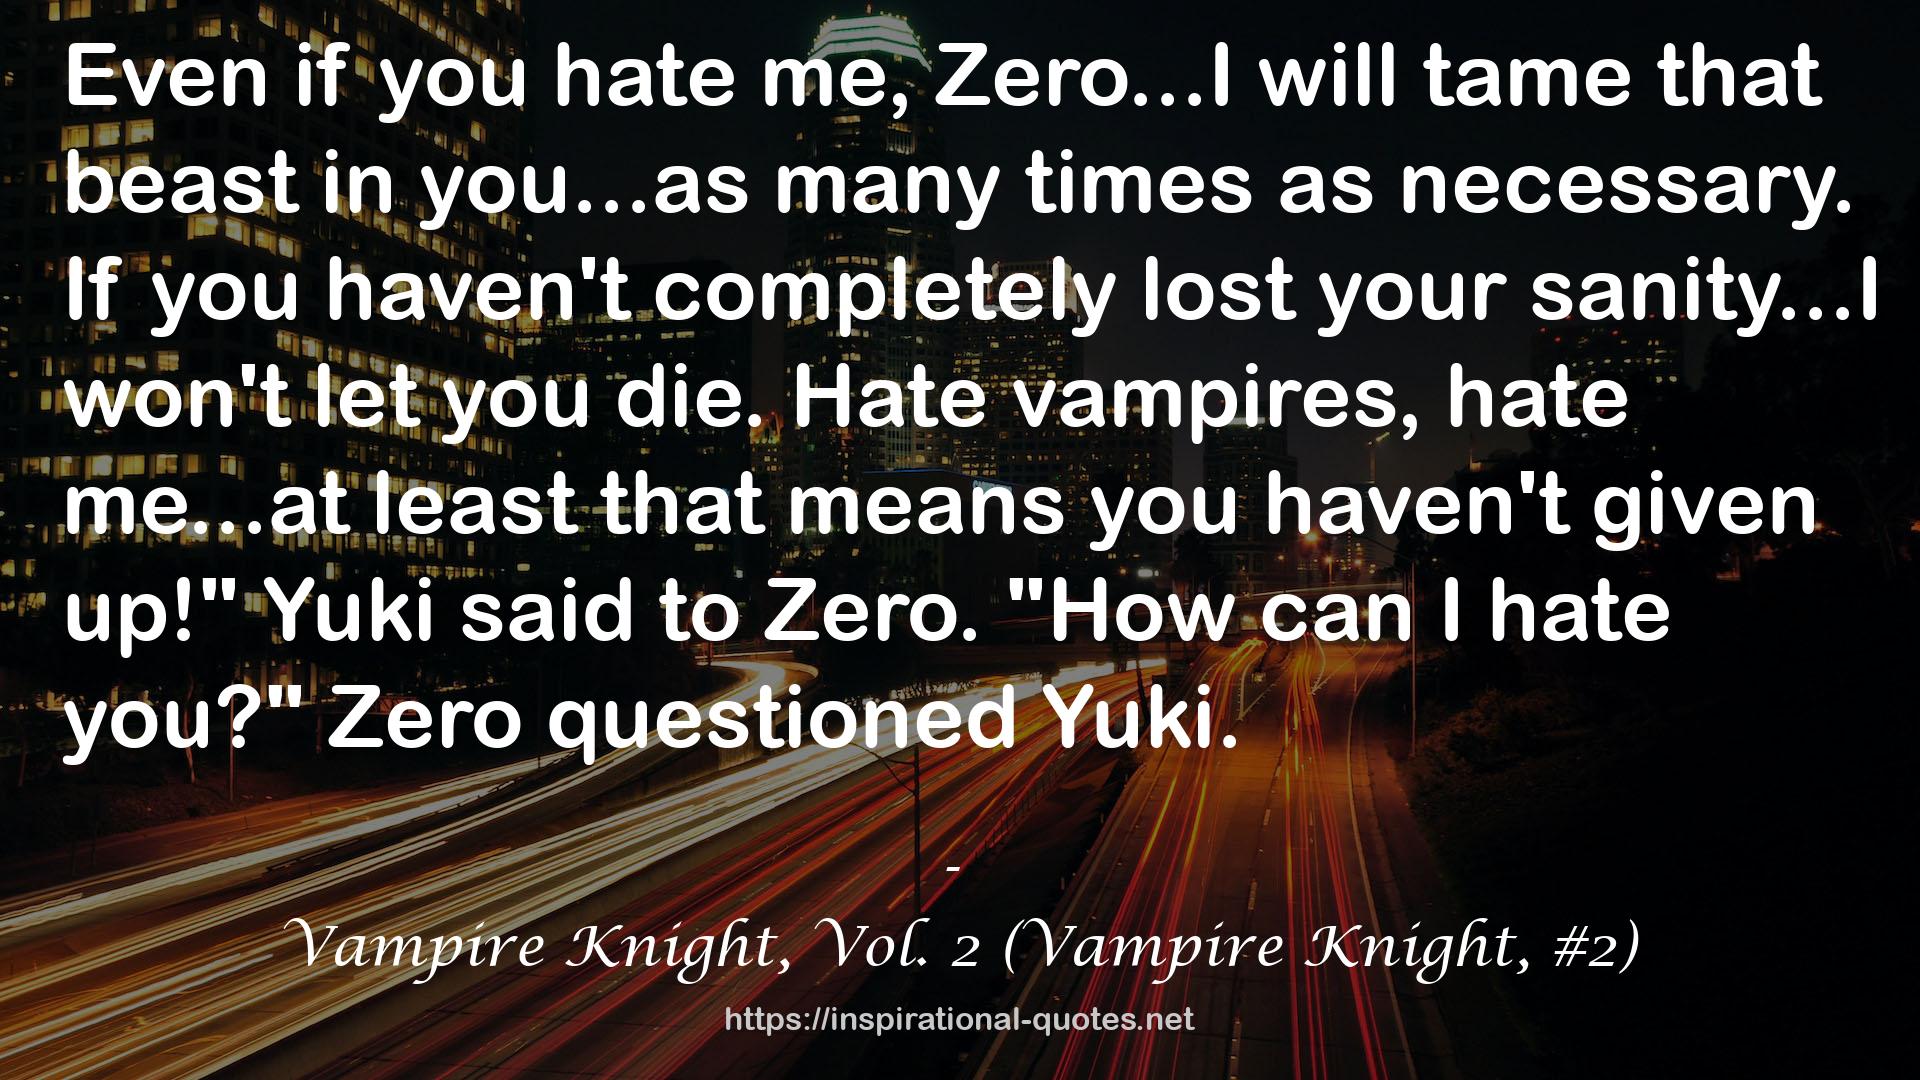 Vampire Knight, Vol. 2 (Vampire Knight, #2) QUOTES